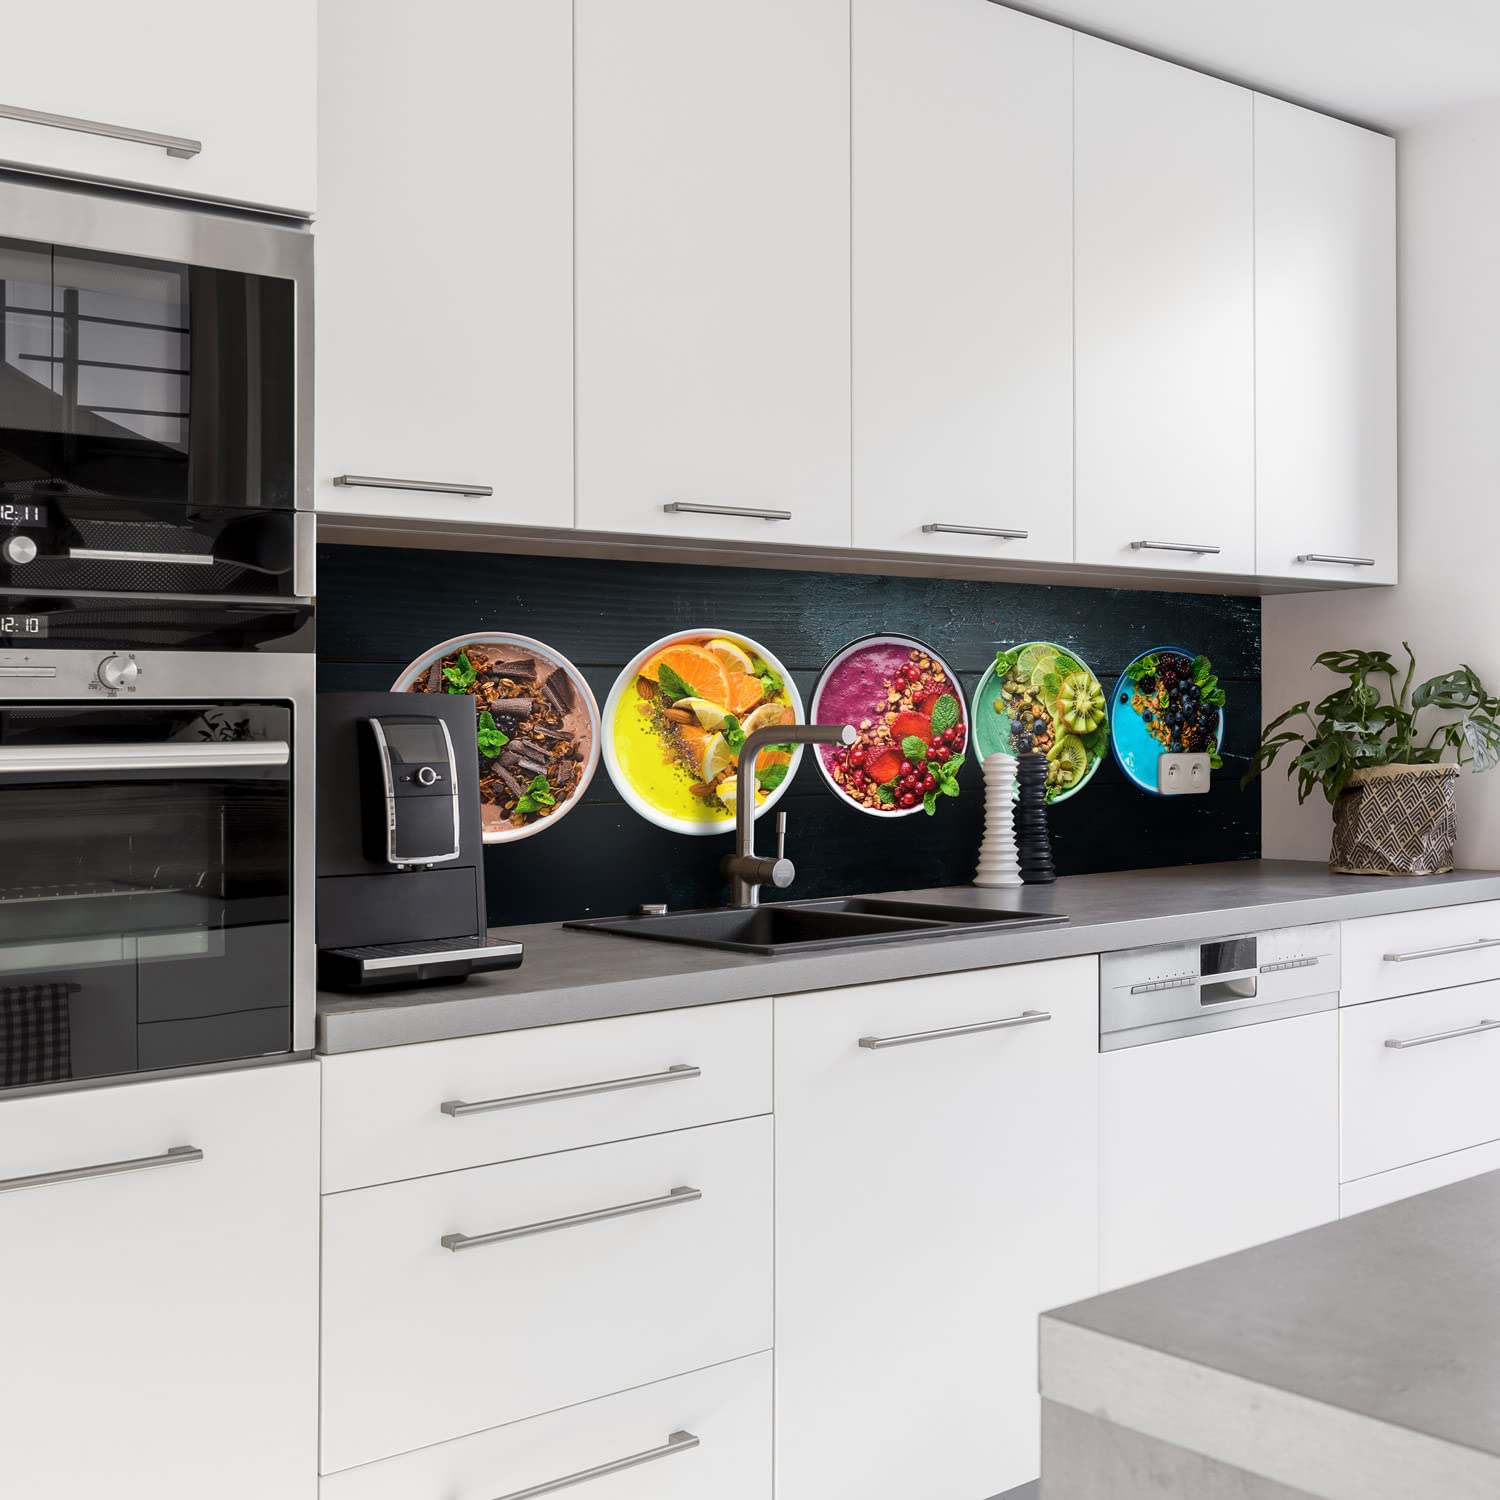 Dedeco Küchenrückwand Motiv: Obst & Gemüse V4, 3mm Acrylglas als Spritzschutz für die Küchenwand Wandschutz Dekowand wasserfest, 3D-Effekt, alle Untergründe, 220 x 60 cm